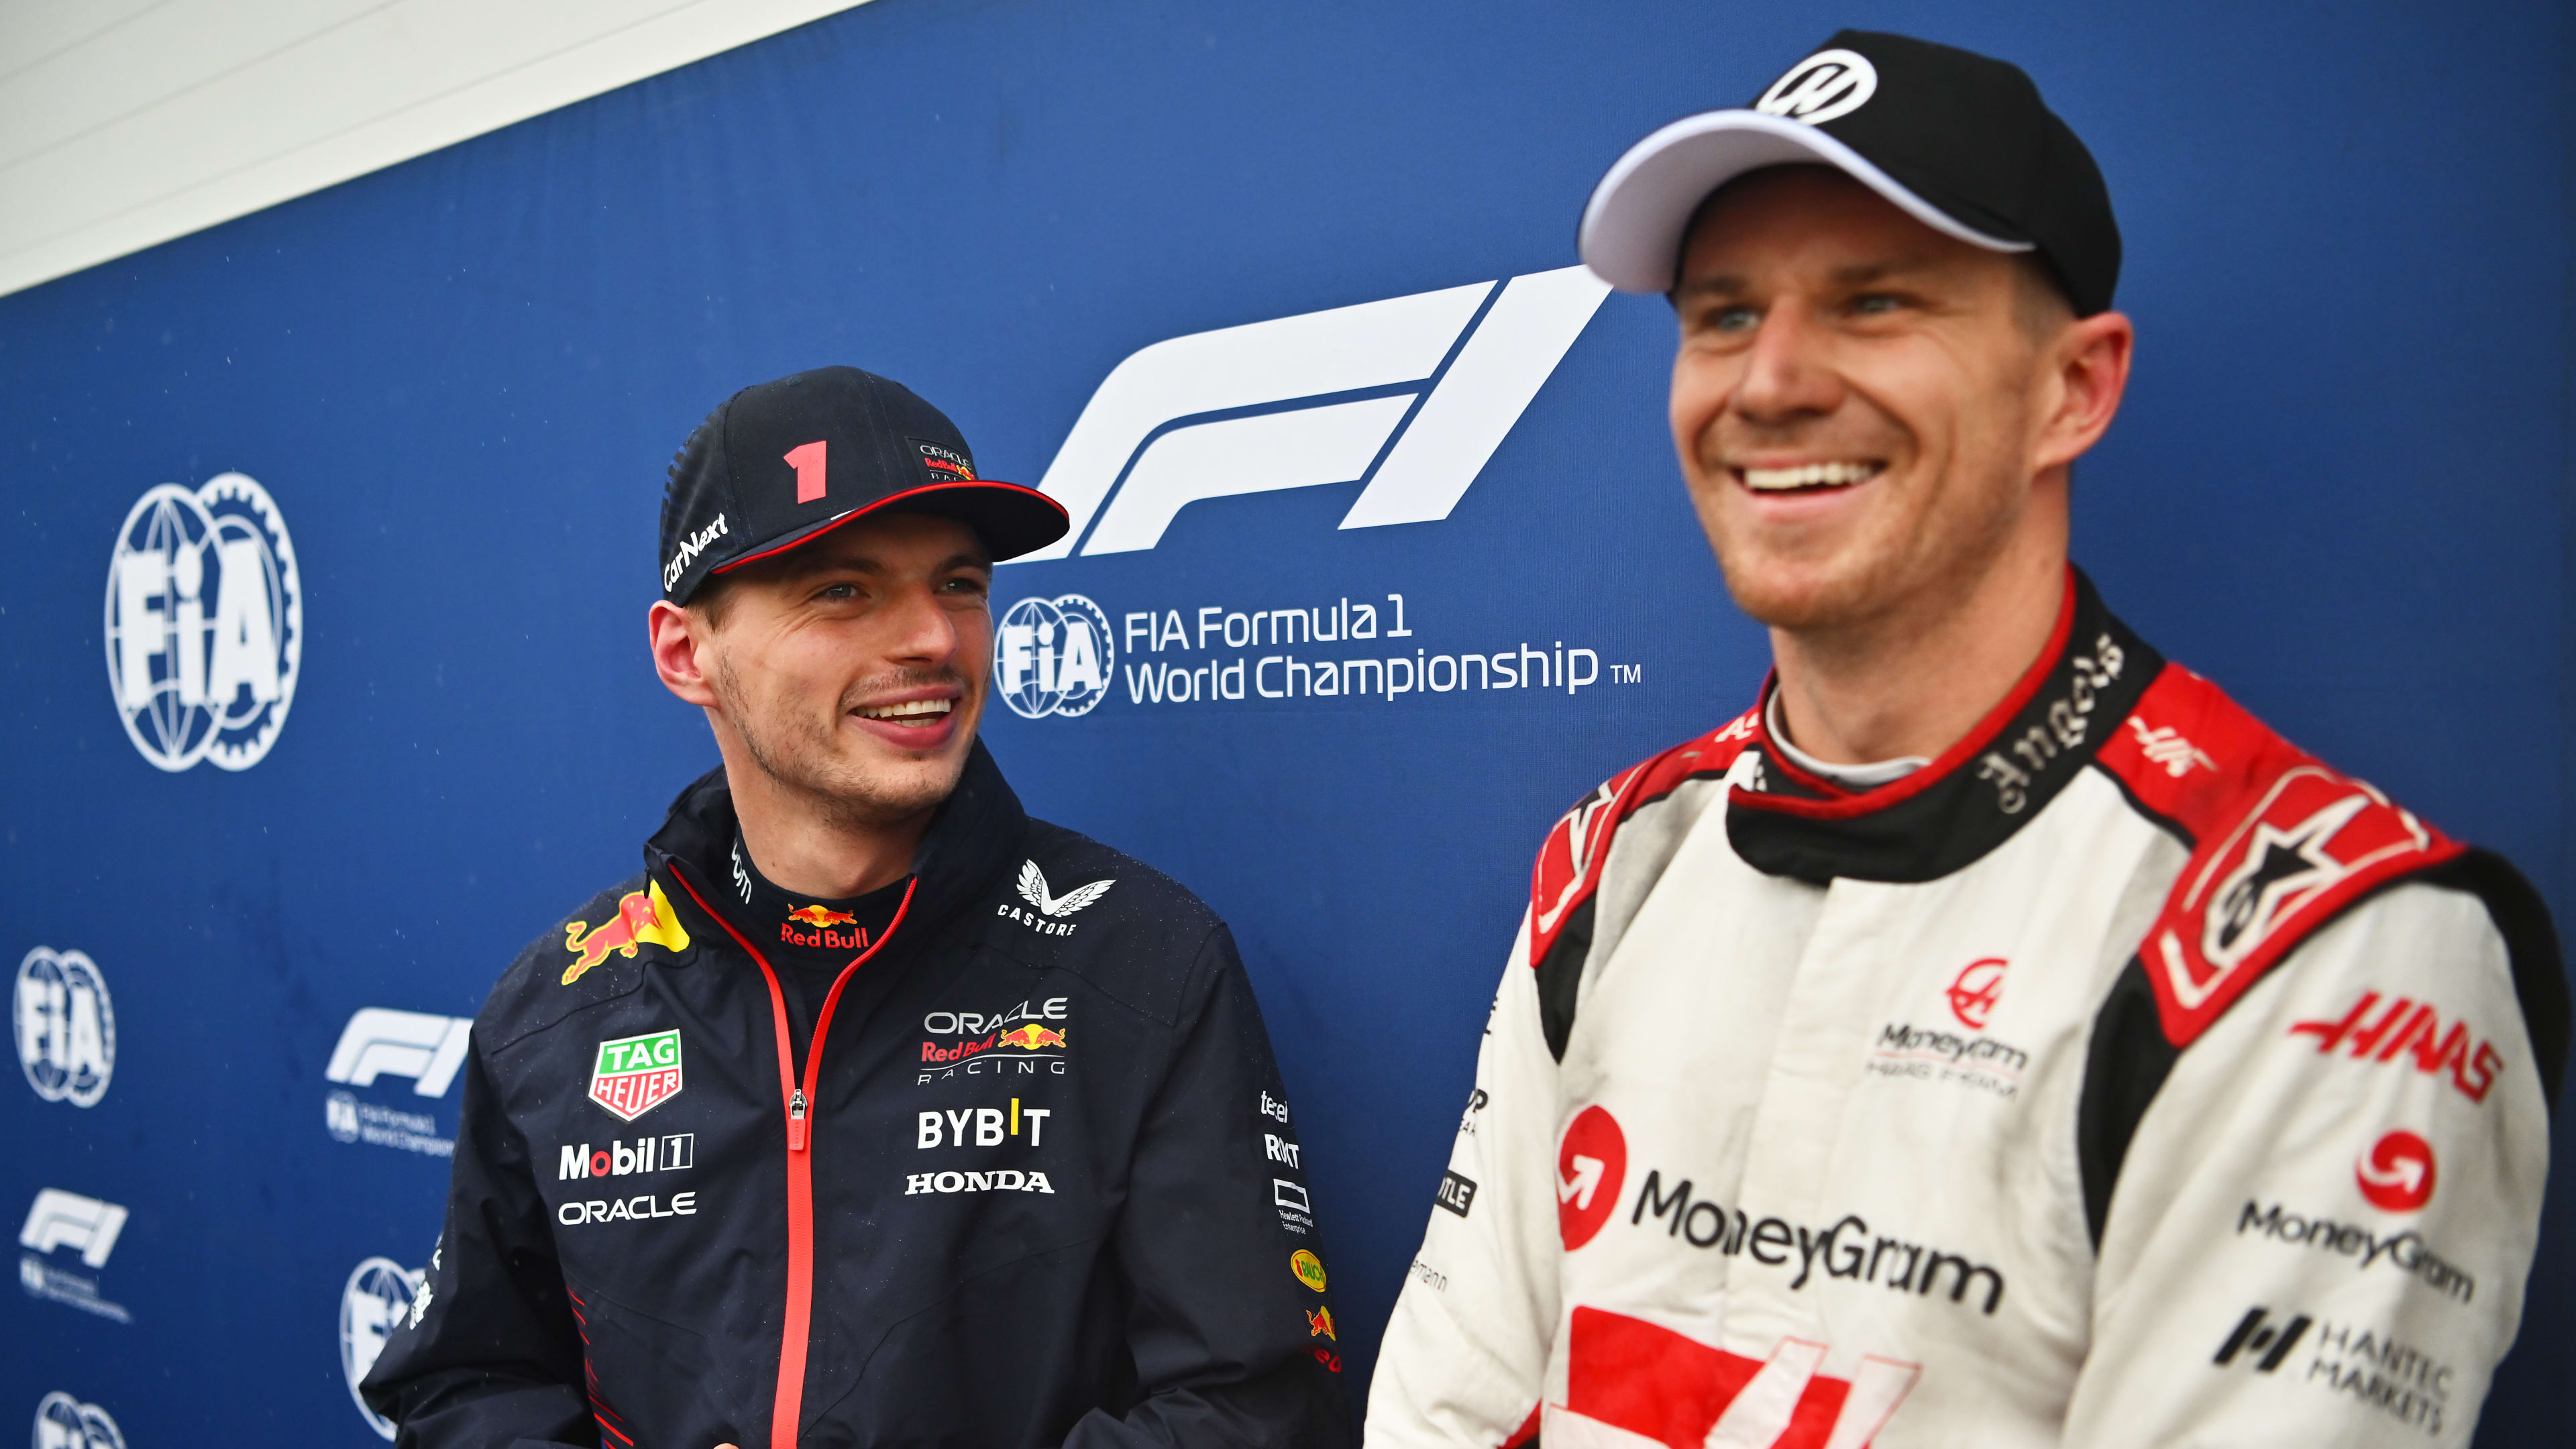 Relatório e destaques da qualificação do Grande Prêmio do Canadá de 2023: Verstappen conquista a pole no Grande Prêmio do Canadá, enquanto Hulkenberg consegue uma virada em P2 antes de cair no grid